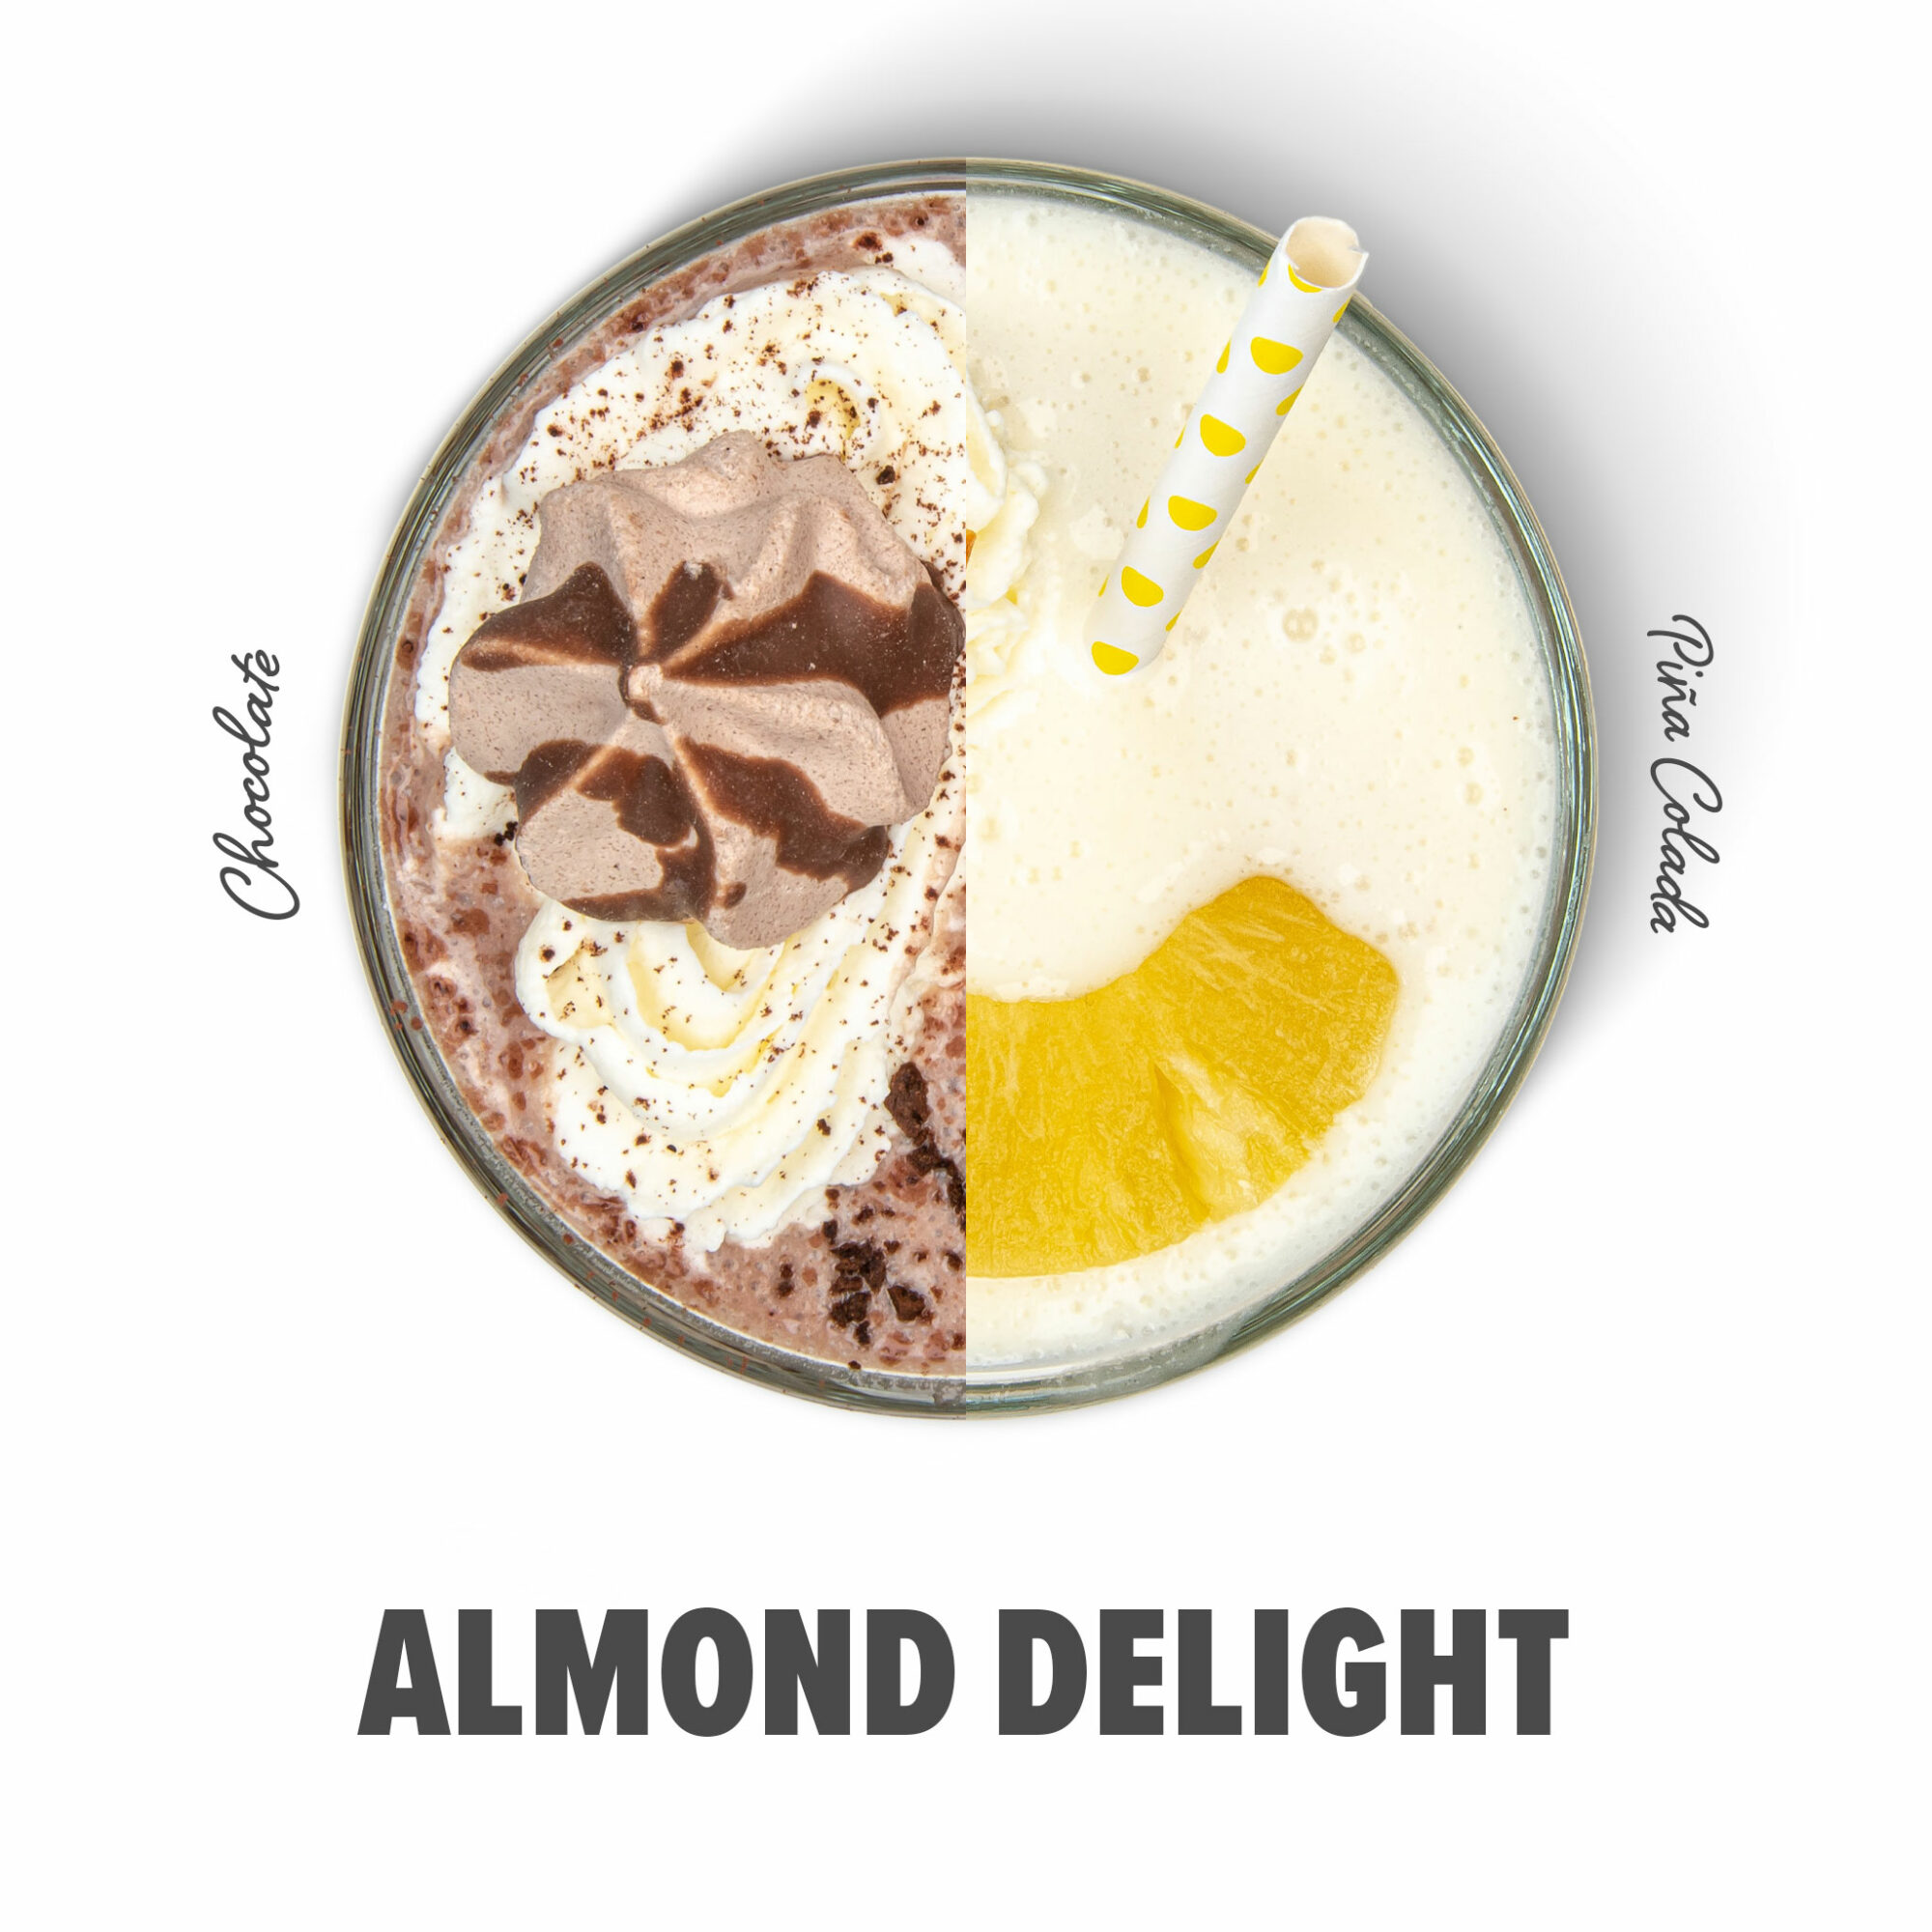 almond delight flavor hack